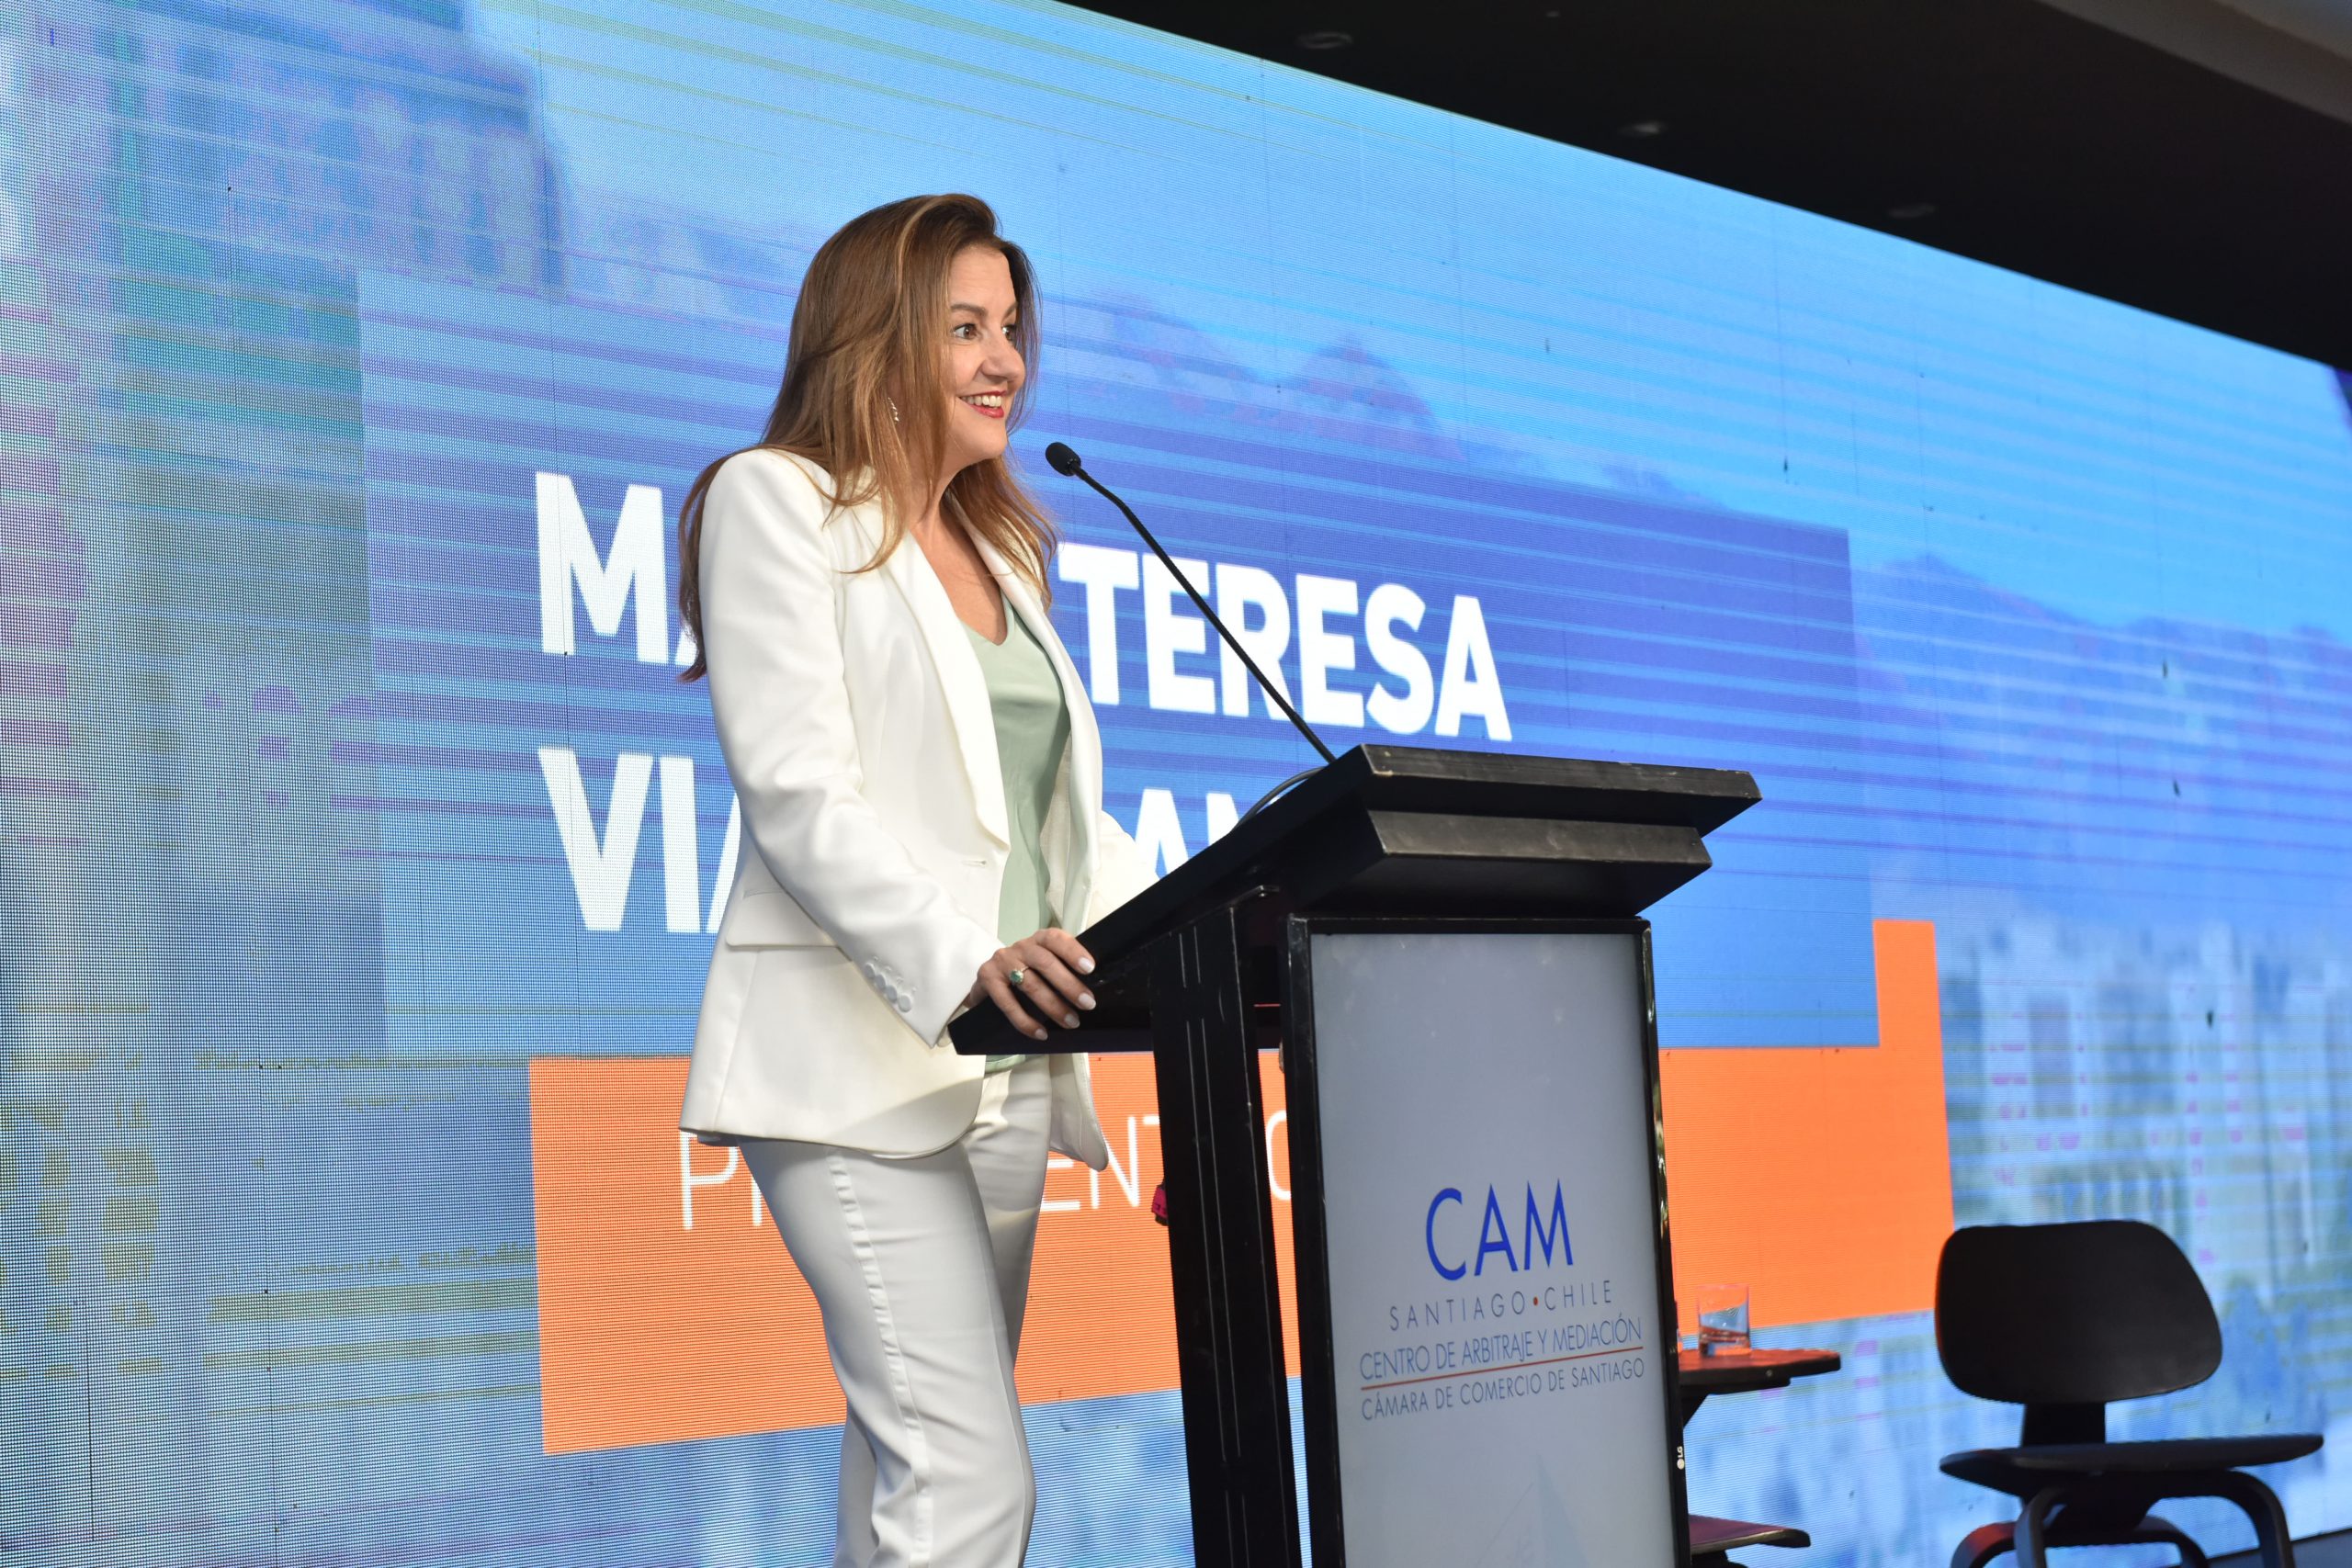 María Teresa Vial (presidenta de la CCS): “Una institución que nos llena de orgullo como Cámara de Comercio de Santiago”